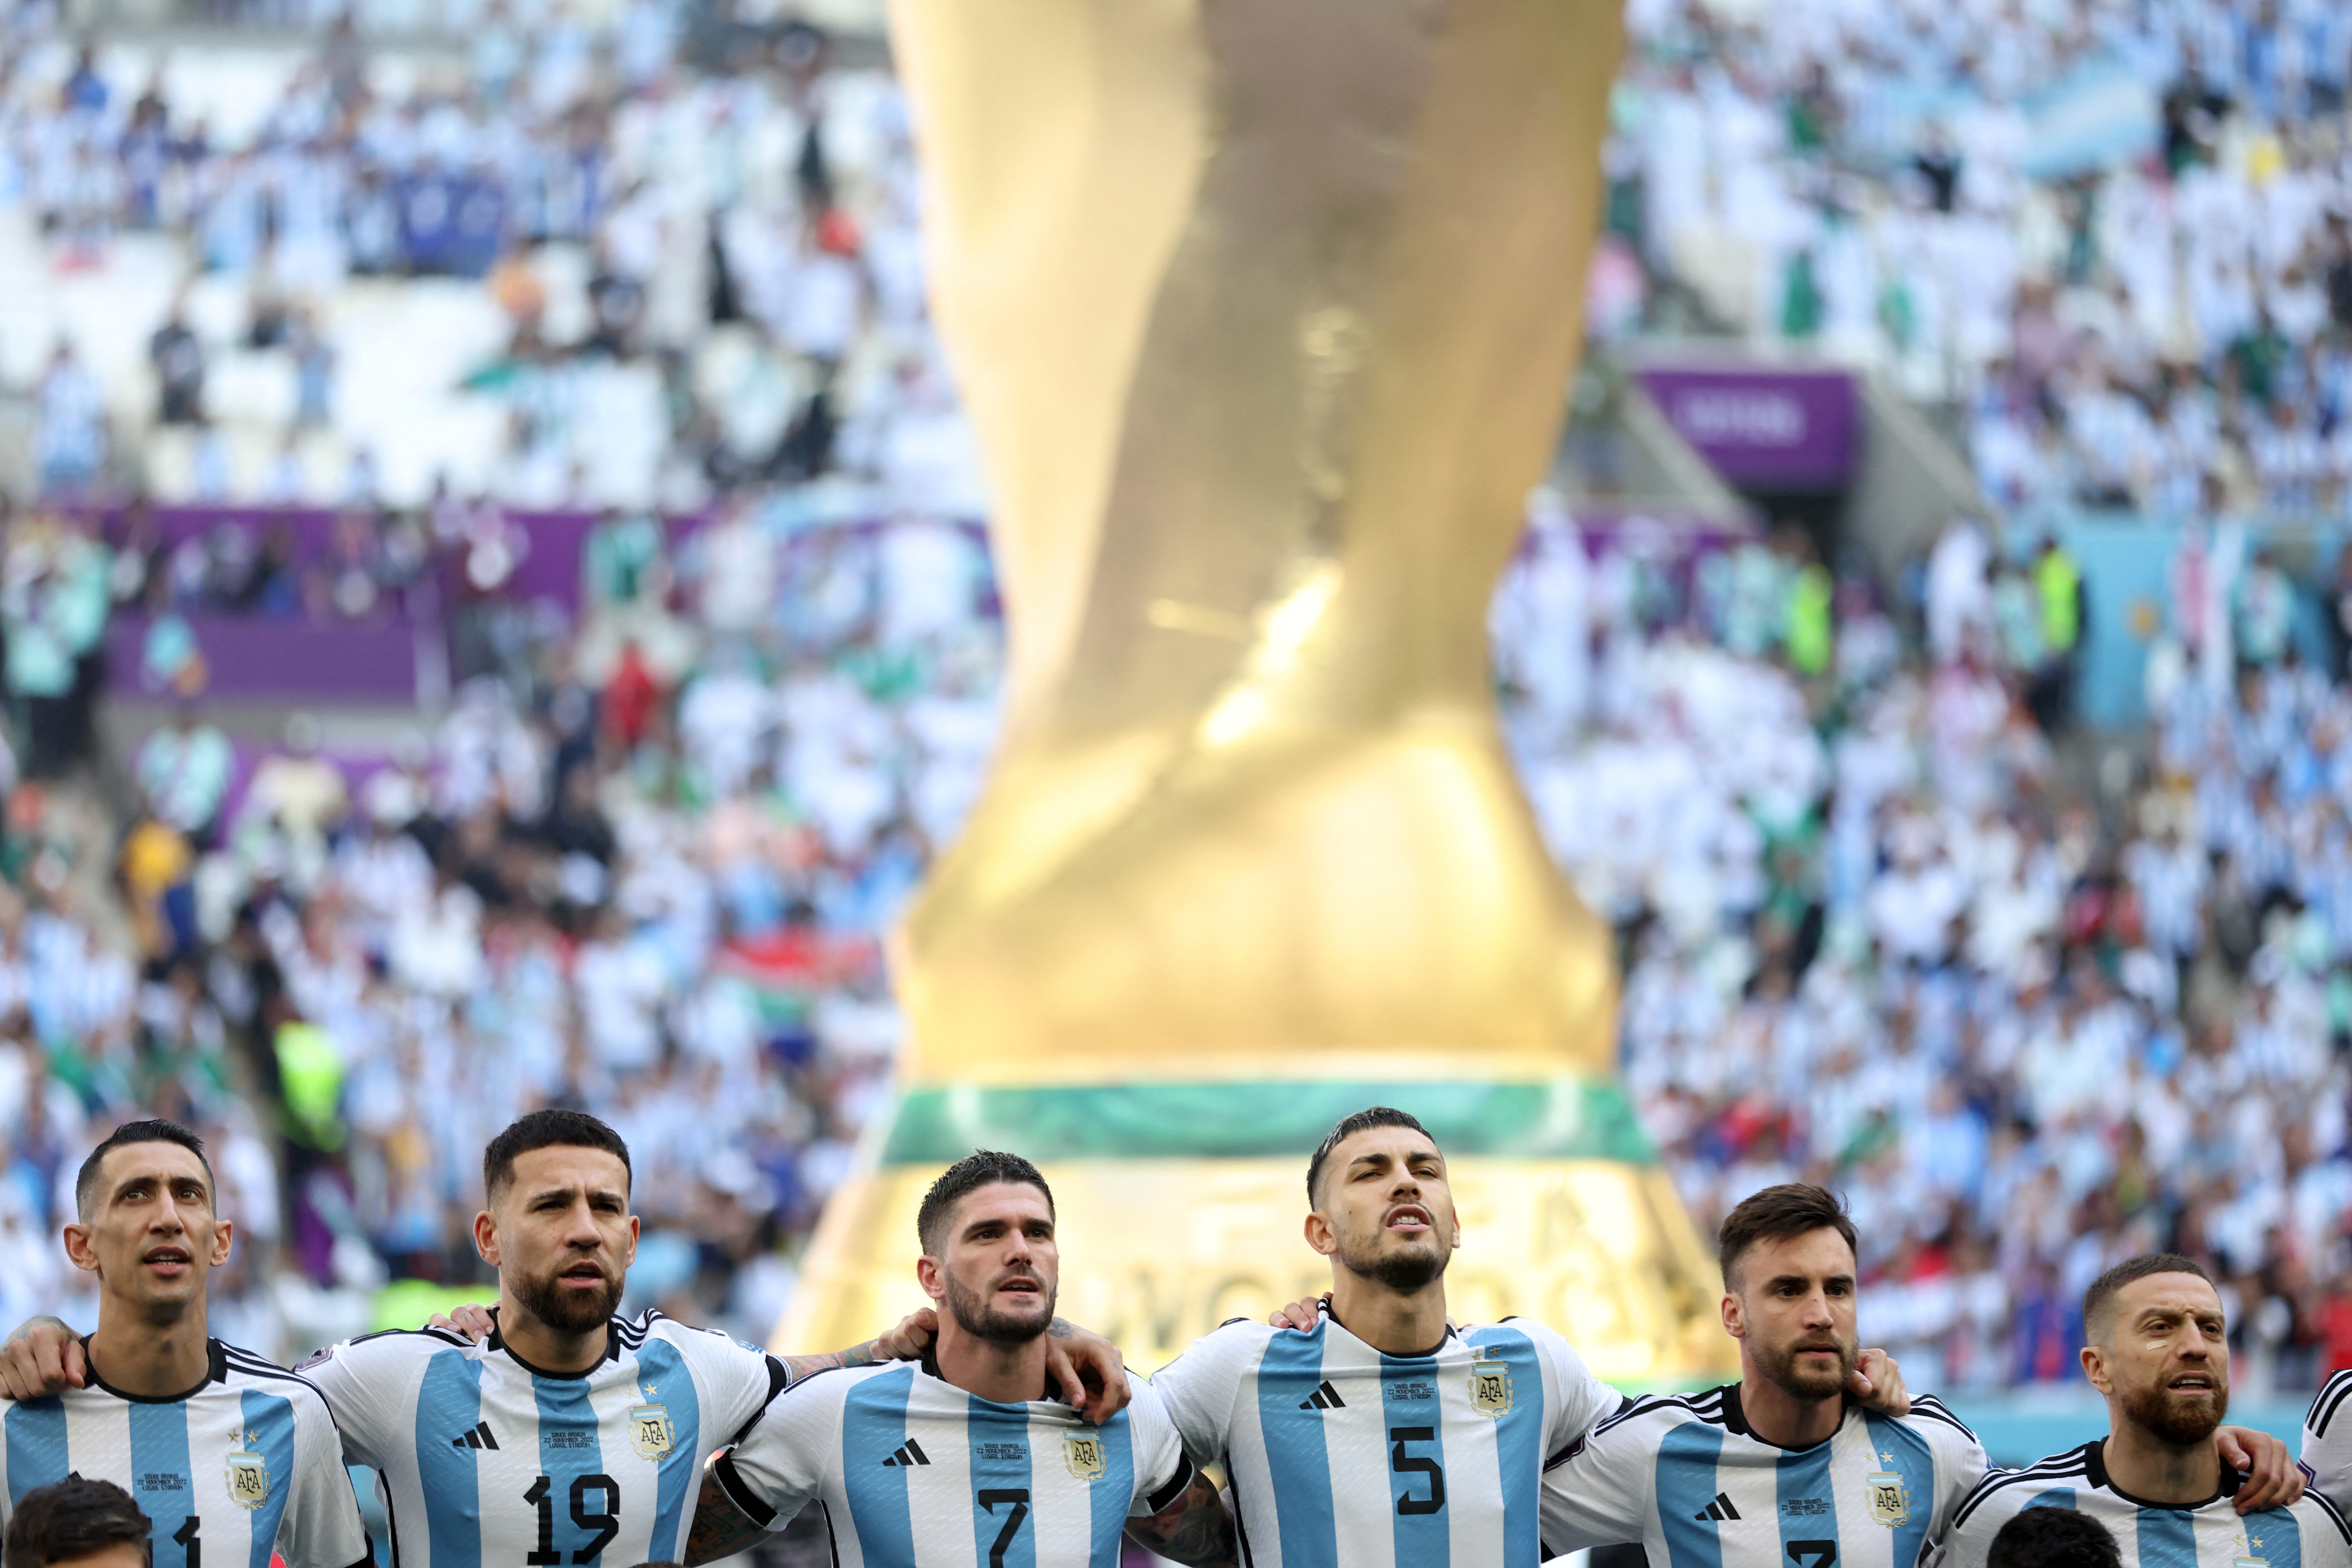 Los futbolistas abrazados durante el himno (Reuters)